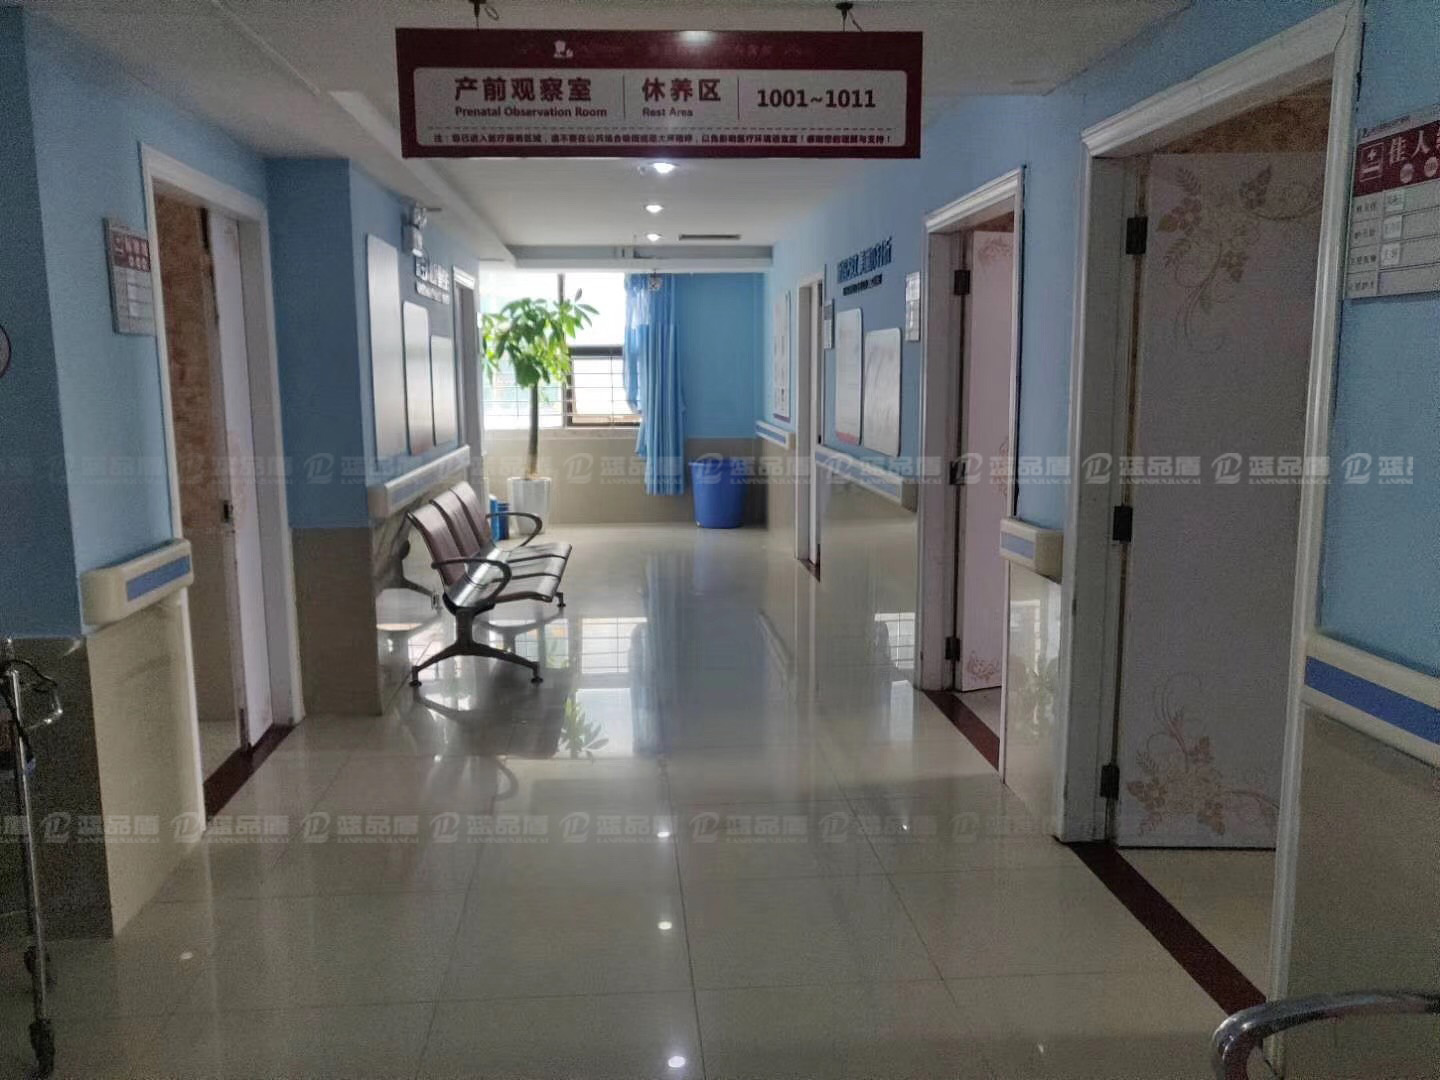 湛江和家宝妇产医院里的走廊扶手,不同颜色搭配不同区域